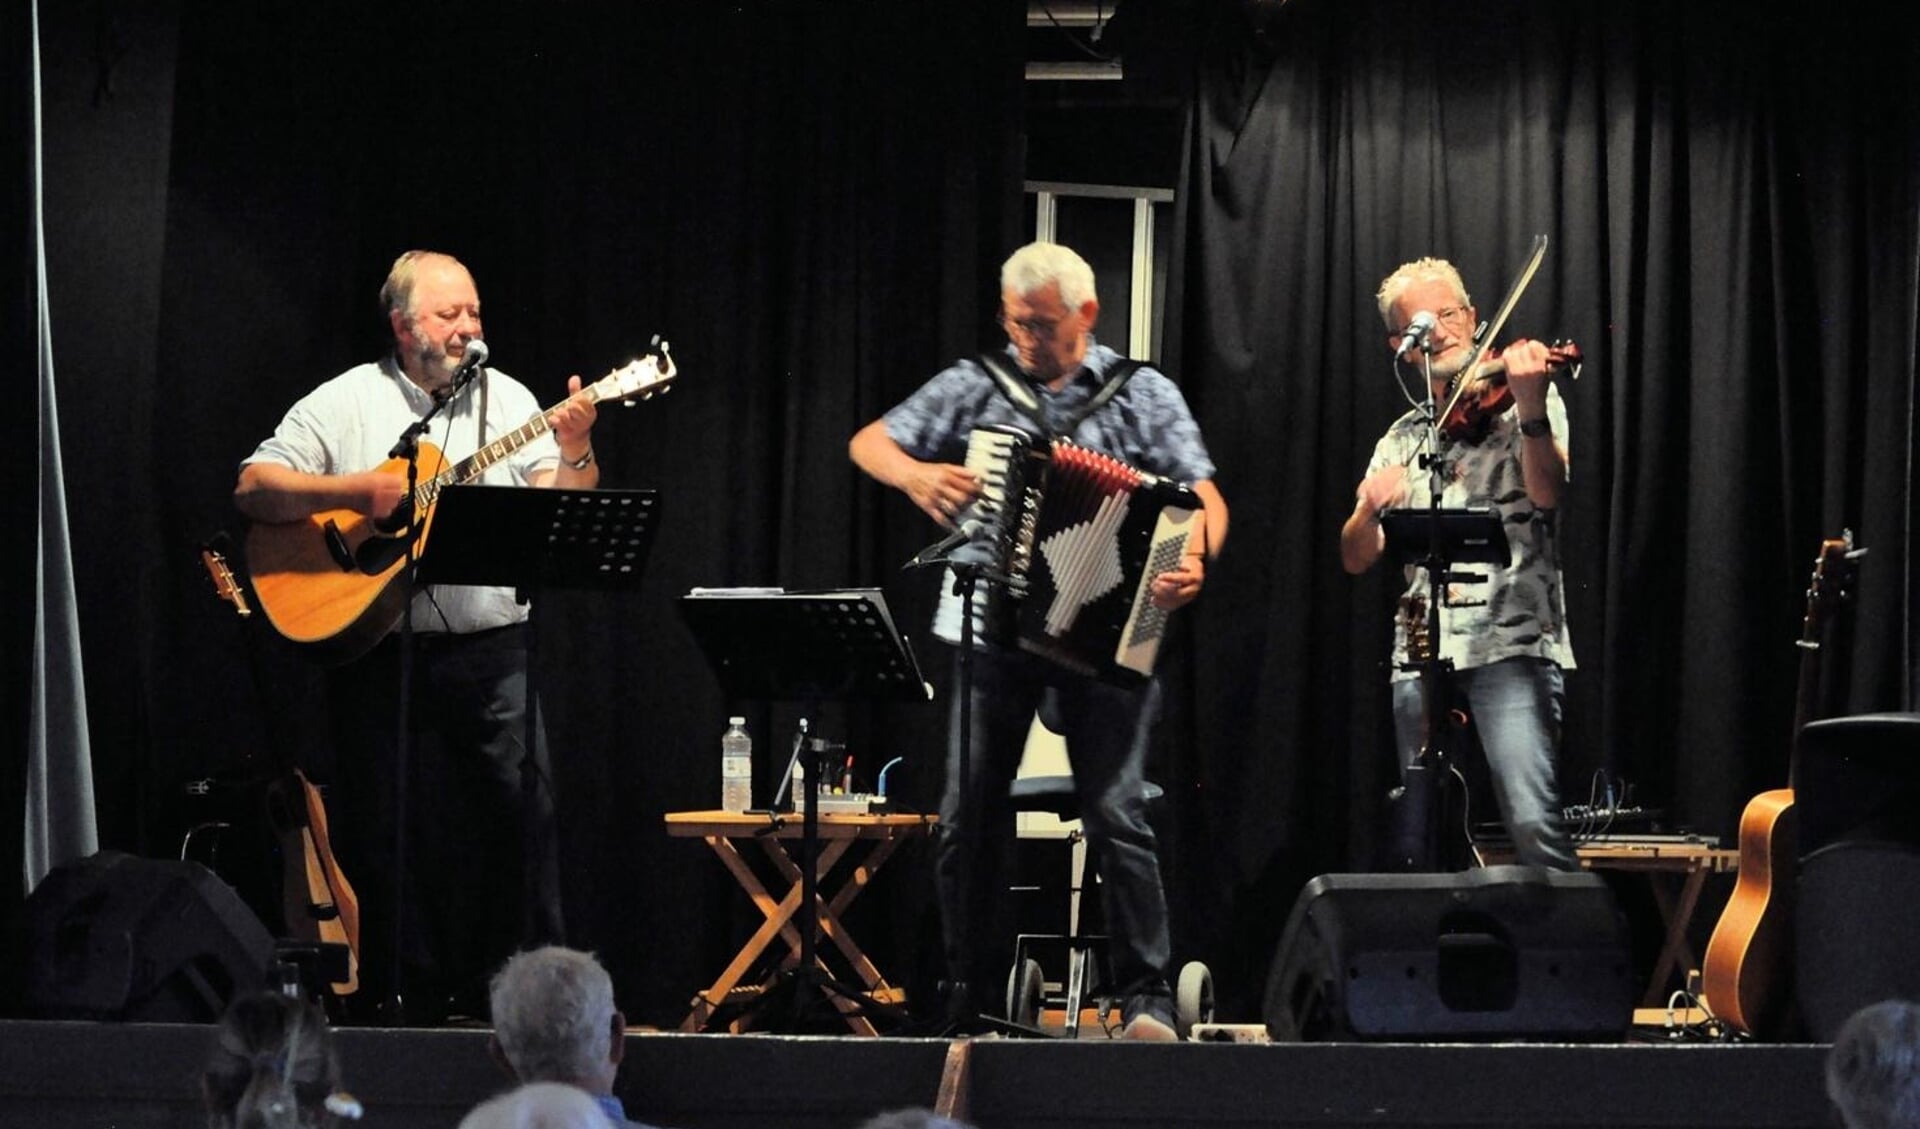 Ensemblet KarlFolk ved en koncert i Løjt Forsamlingshus. Foto: